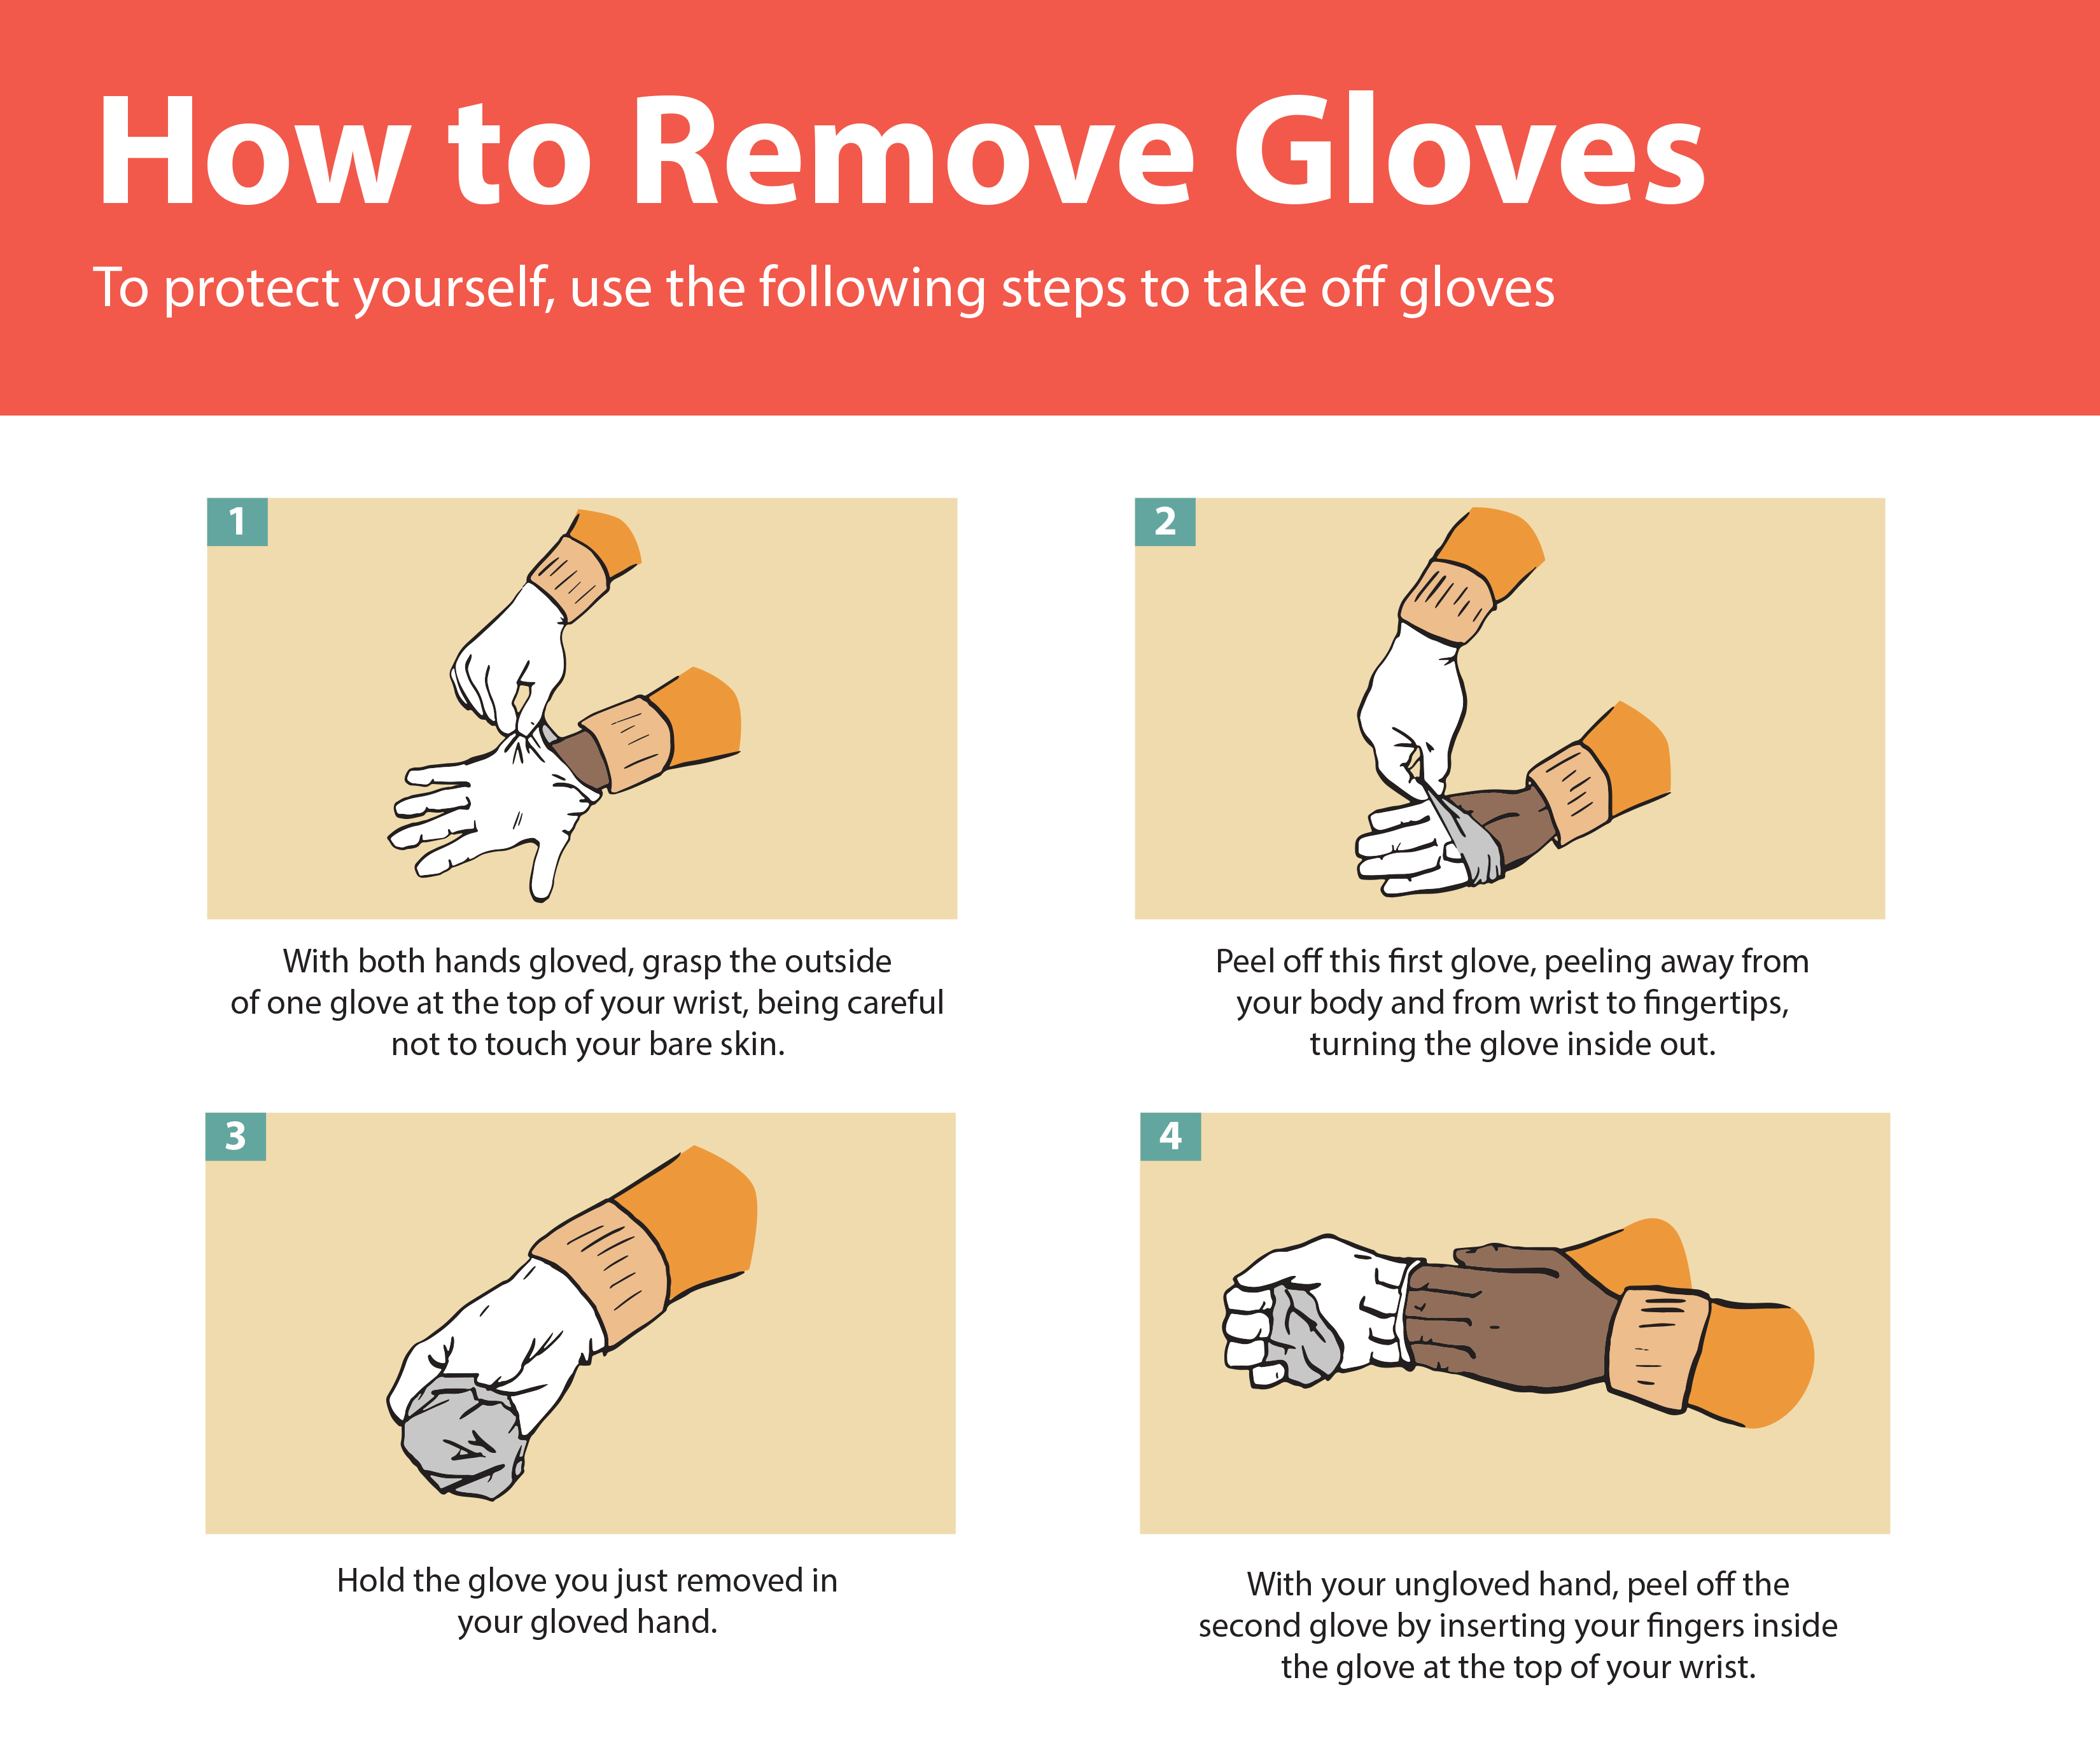 Comment faire pour supprimer en toute sécurité des gants pour travailler avec les patients avec une maladie infectieuse